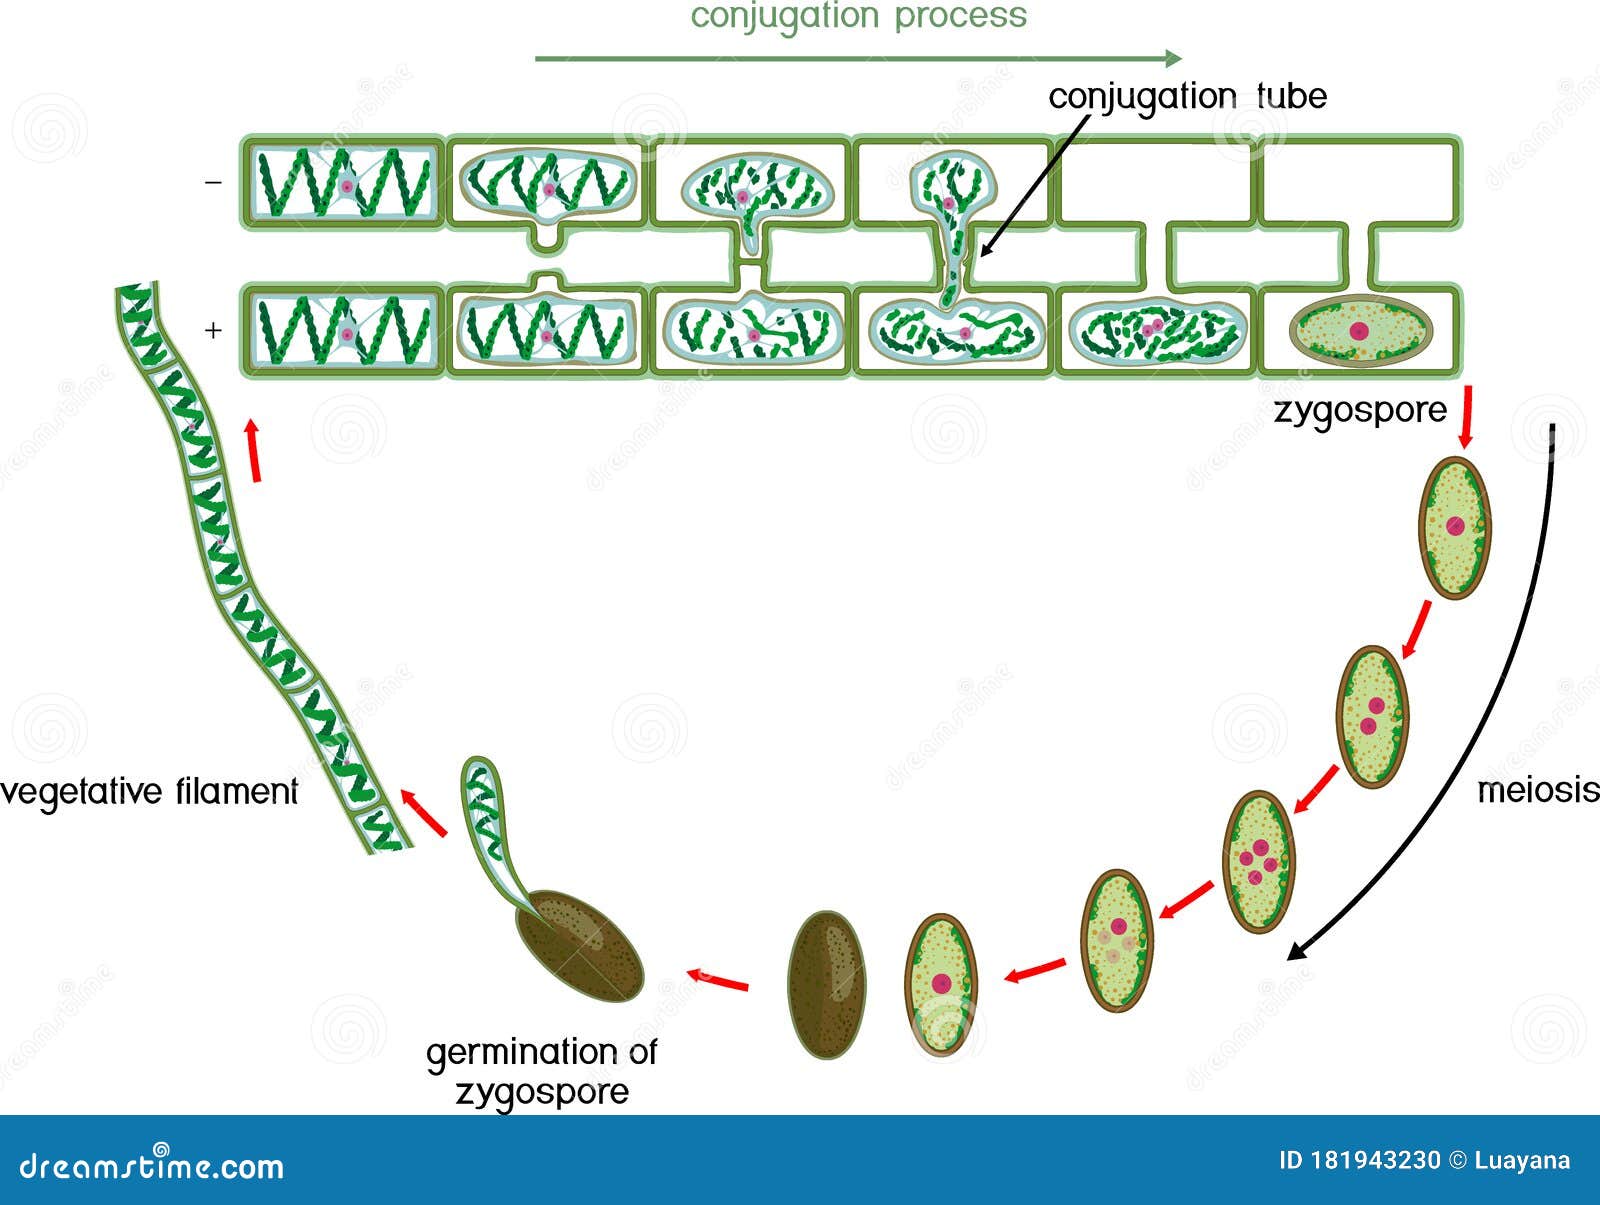 Спирогира развитие. Цикл развития спирогиры. Жизненный цикл водорослей спирогира. Жизненного цикла водоросли Spirogyra. Цикл размножения спирогиры.